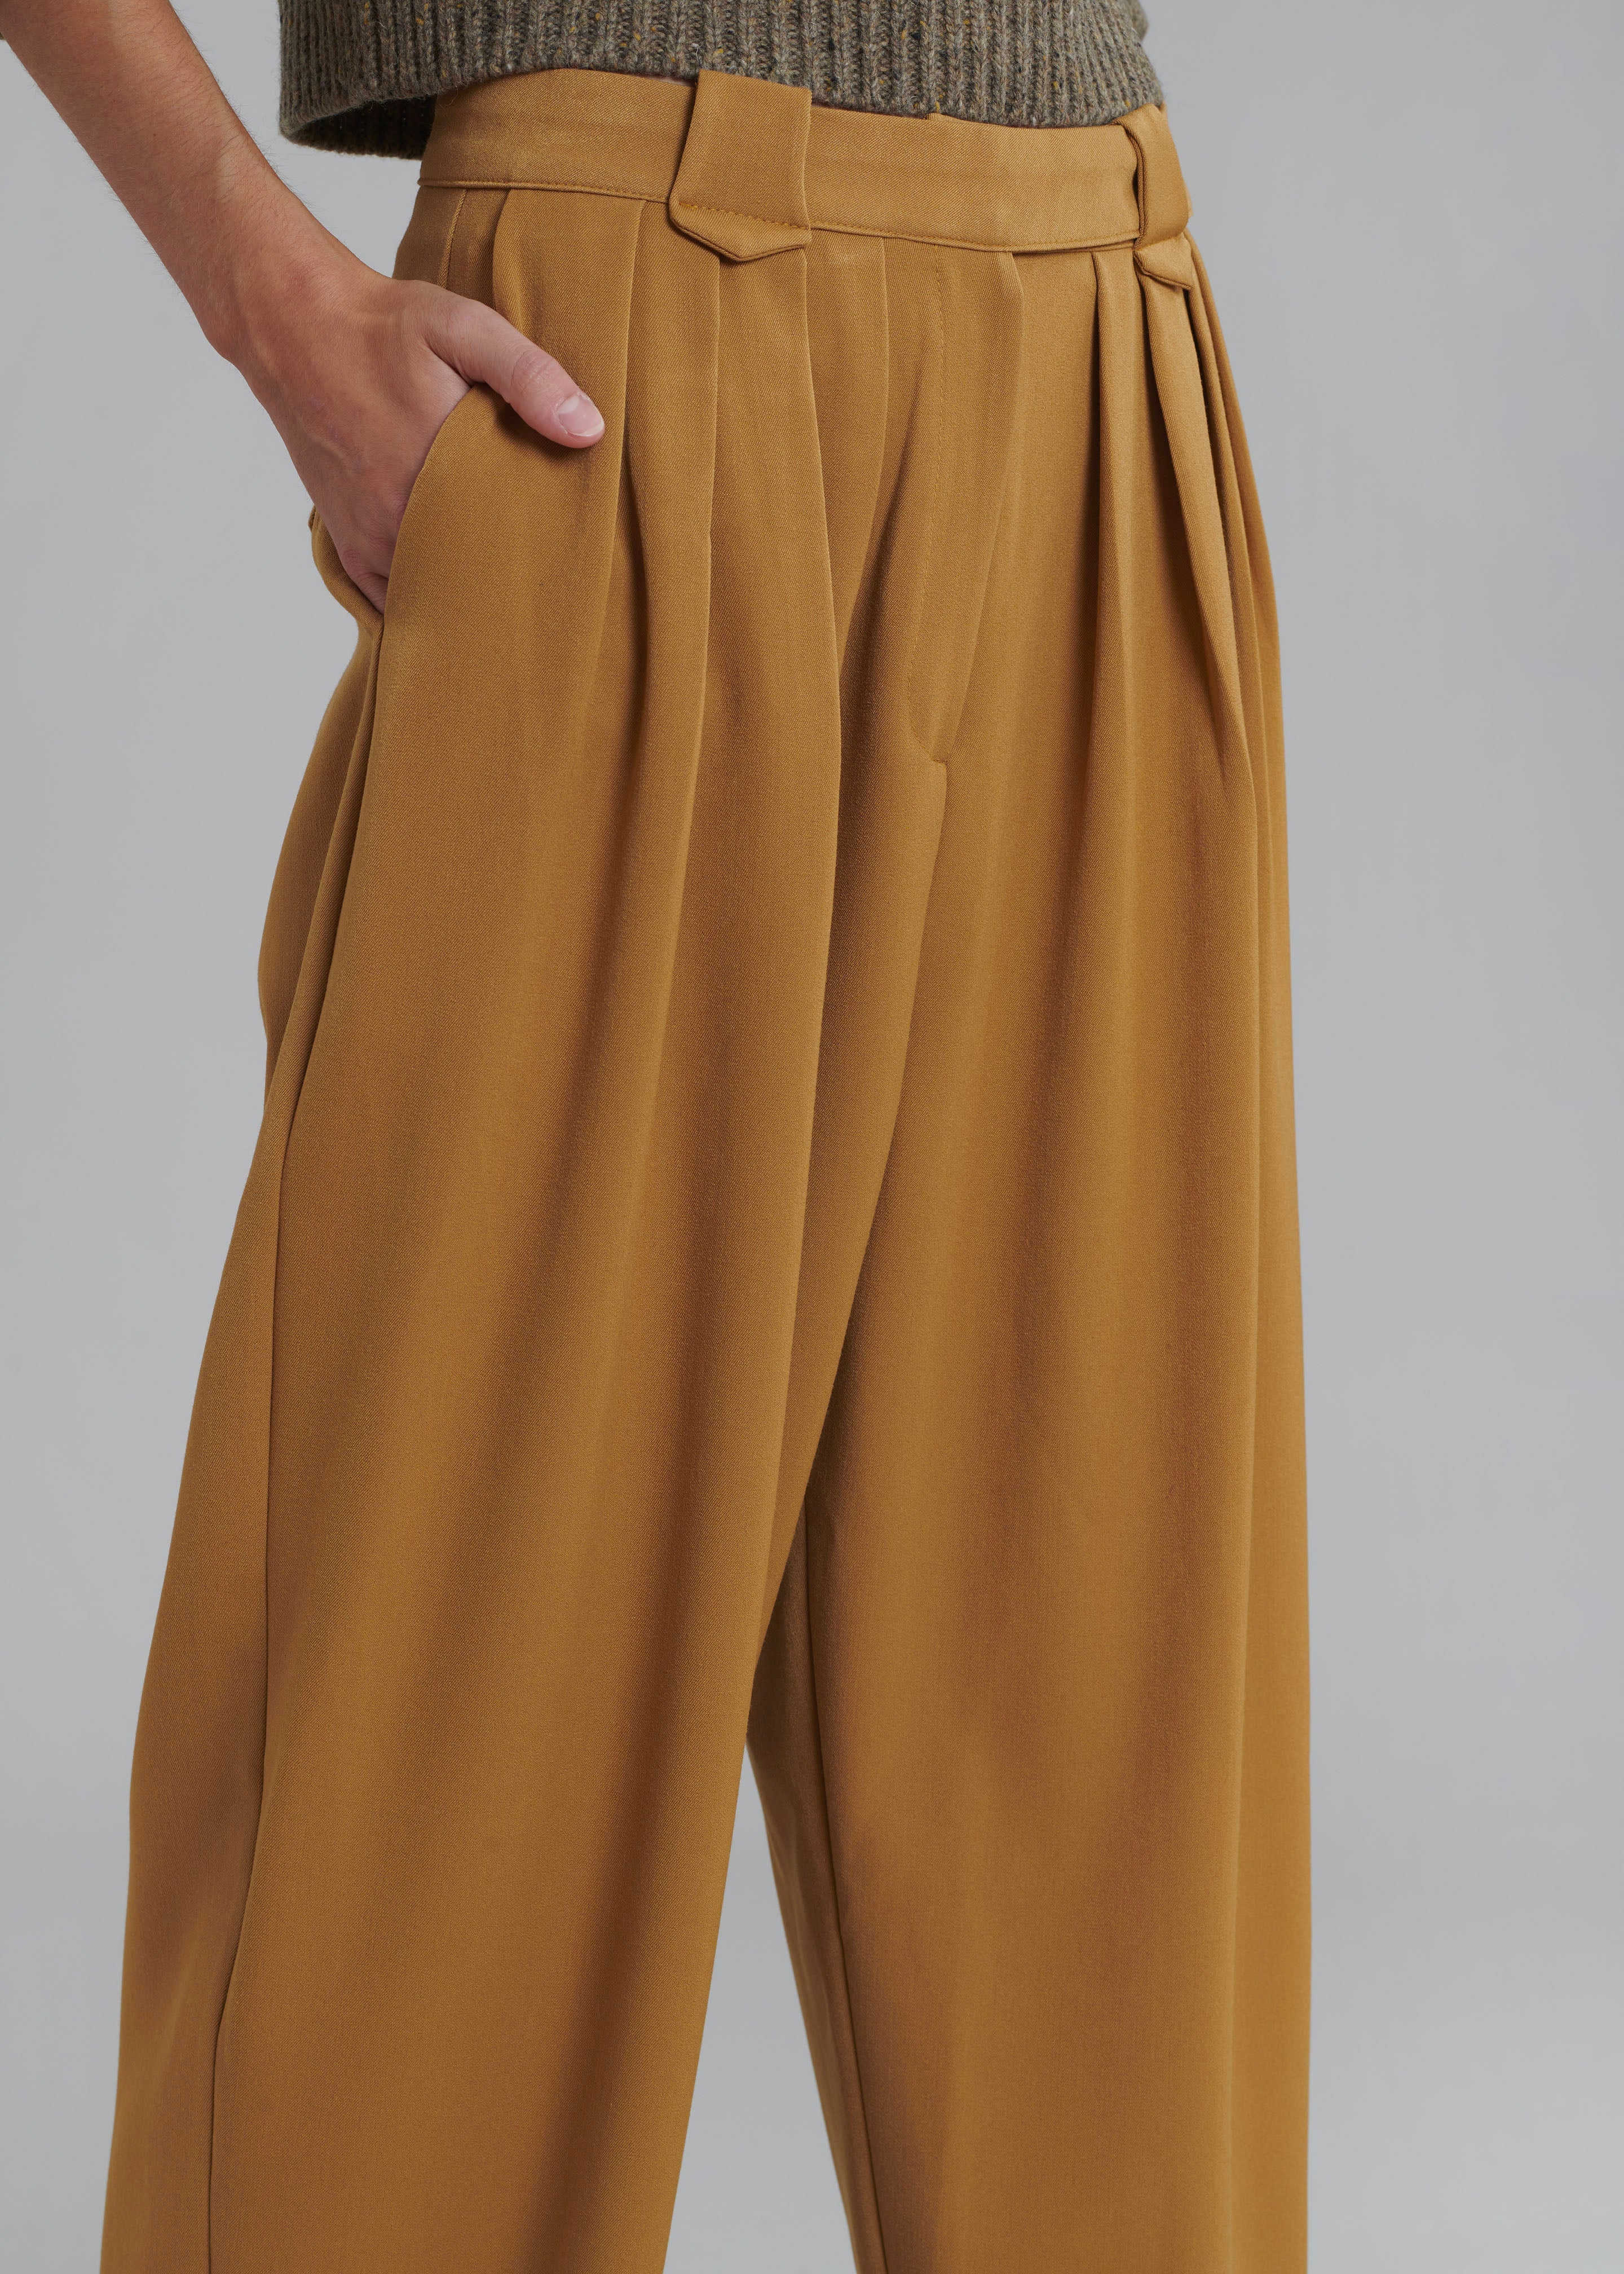 Wide-Leg Trouser in Ginger | Shop Ann Mashburn